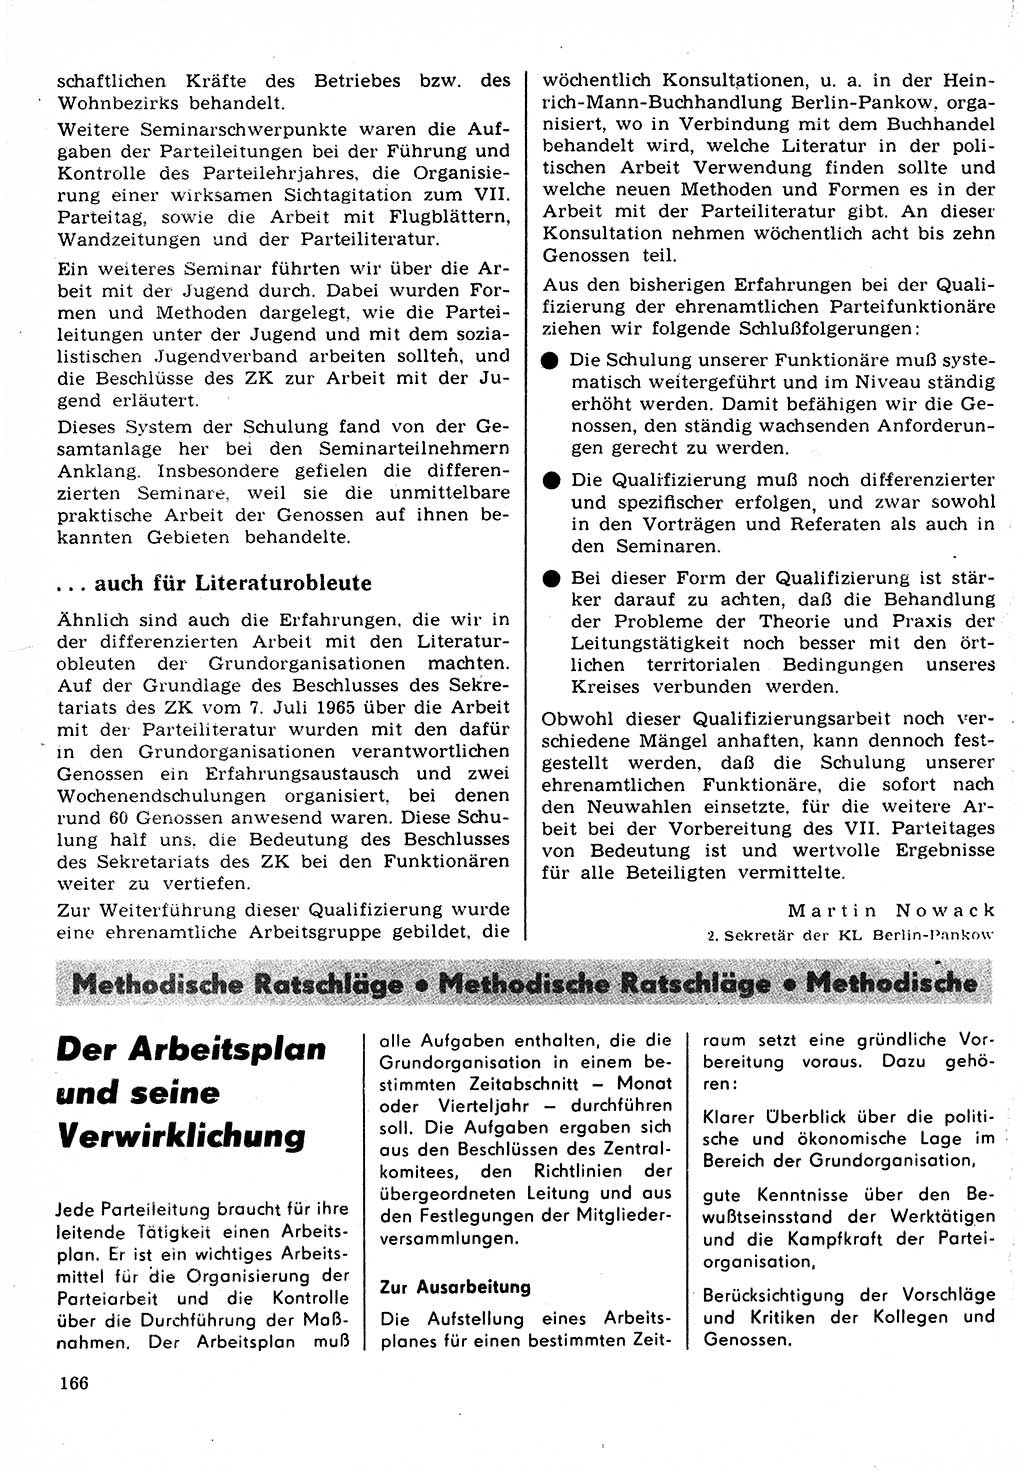 Neuer Weg (NW), Organ des Zentralkomitees (ZK) der SED (Sozialistische Einheitspartei Deutschlands) für Fragen des Parteilebens, 22. Jahrgang [Deutsche Demokratische Republik (DDR)] 1967, Seite 166 (NW ZK SED DDR 1967, S. 166)